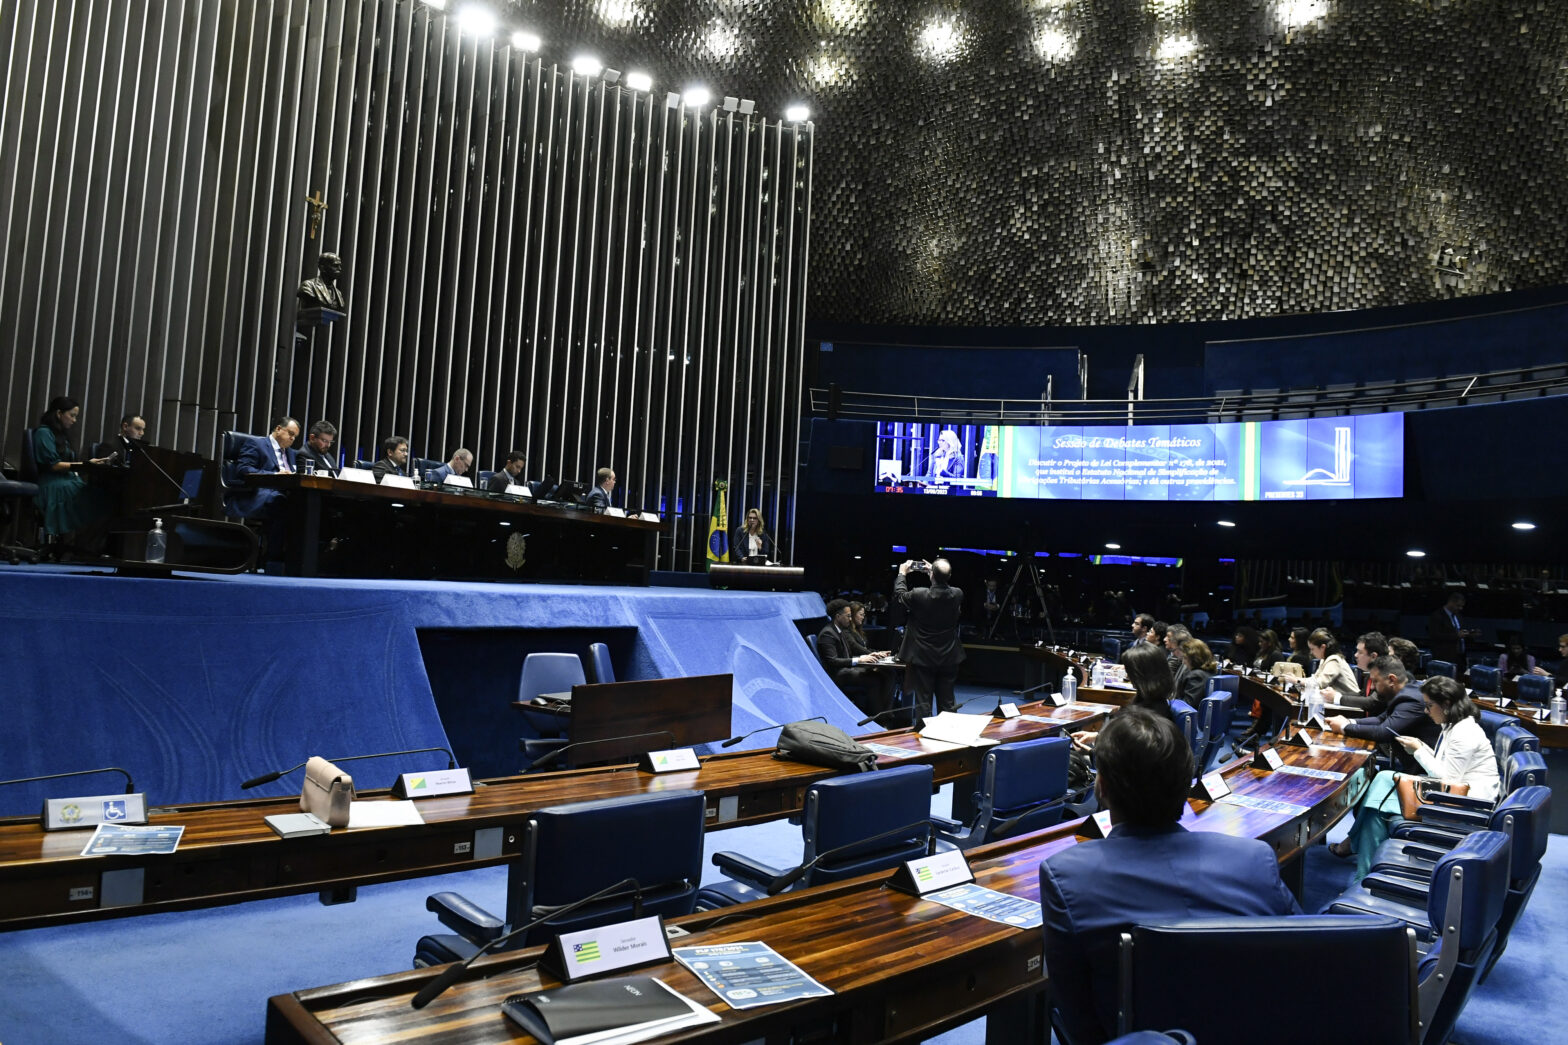 CONSTITUIÇÃO DA REPÚBLICA FEDERATIVA DO BRASIL: ÚLTIMA ALTERAÇÃO 16 DE  DEZEMBRO DE 2021 by Congresso Nacional do Brasil